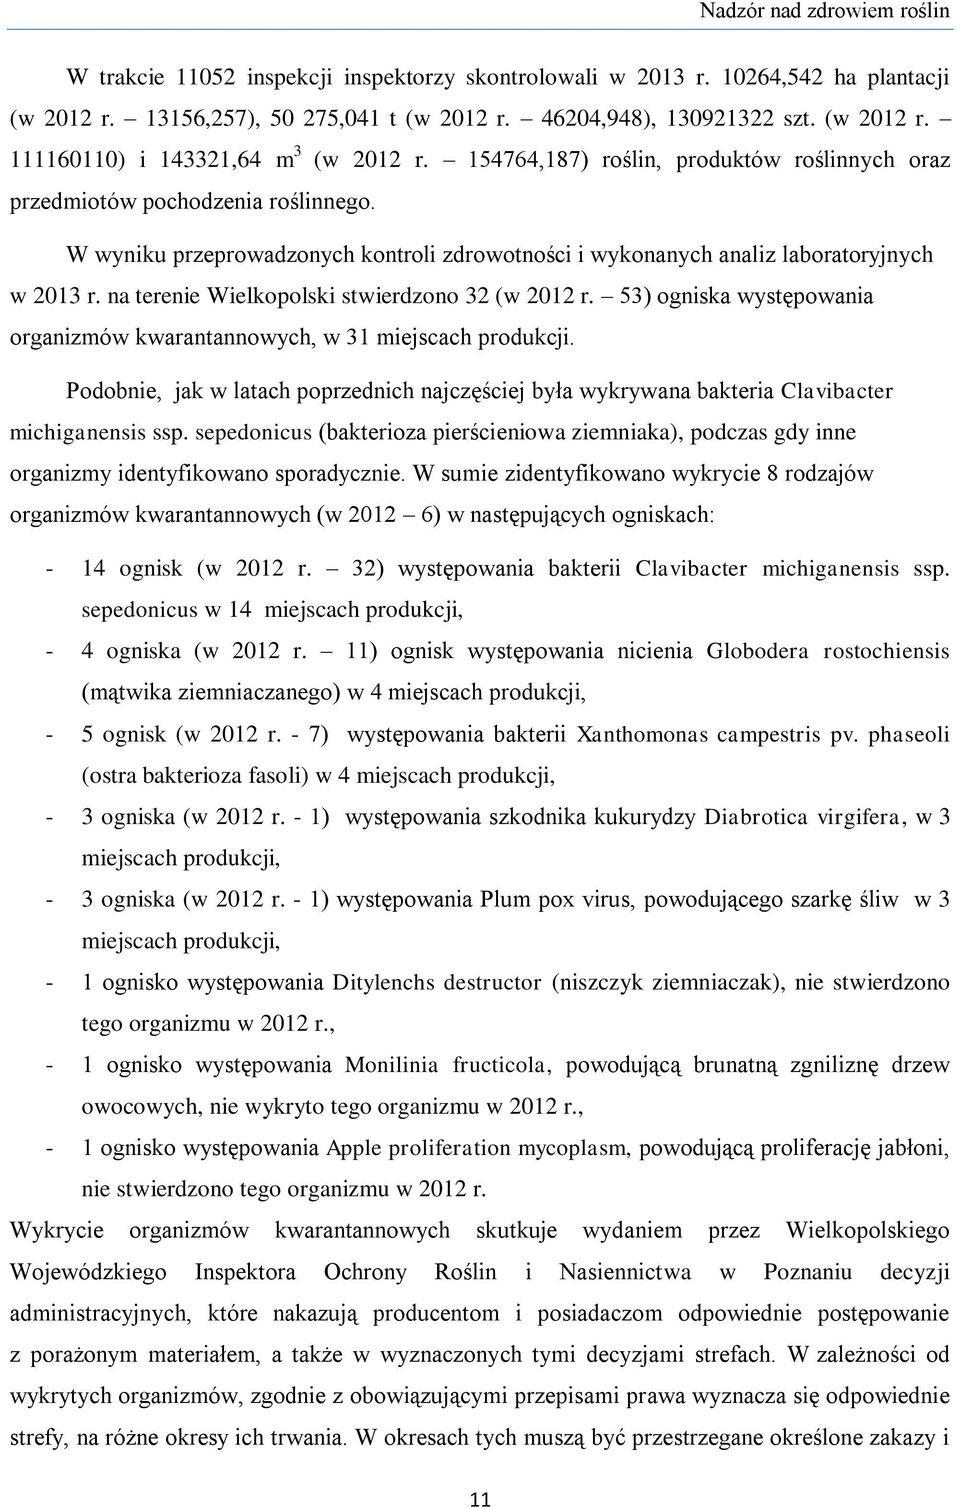 na terenie Wielkopolski stwierdzono 32 (w 2012 r. 53) ogniska występowania organizmów kwarantannowych, w 31 miejscach produkcji.